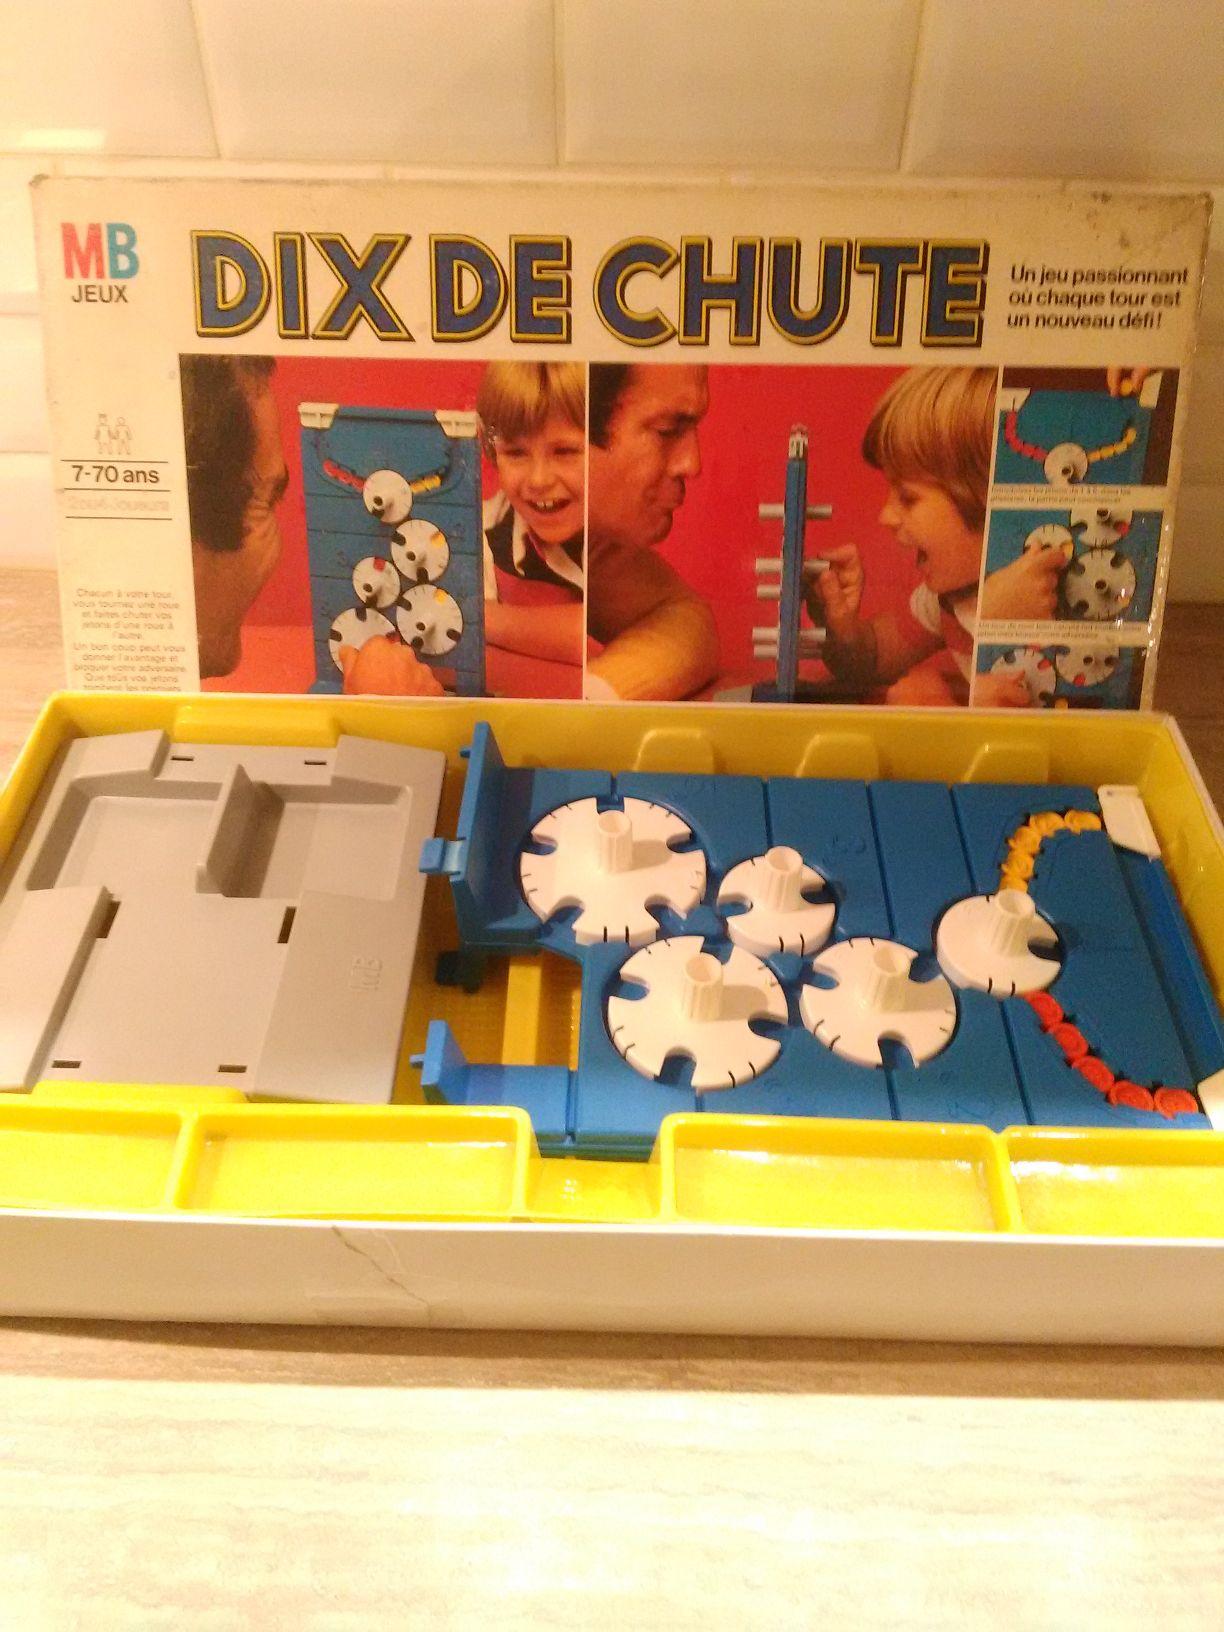 DIX DE CHUTE - MB JEUX - 100% COMPLET - Jeu De Société Livraison Offerte  !!!!! EUR 19,90 - PicClick FR